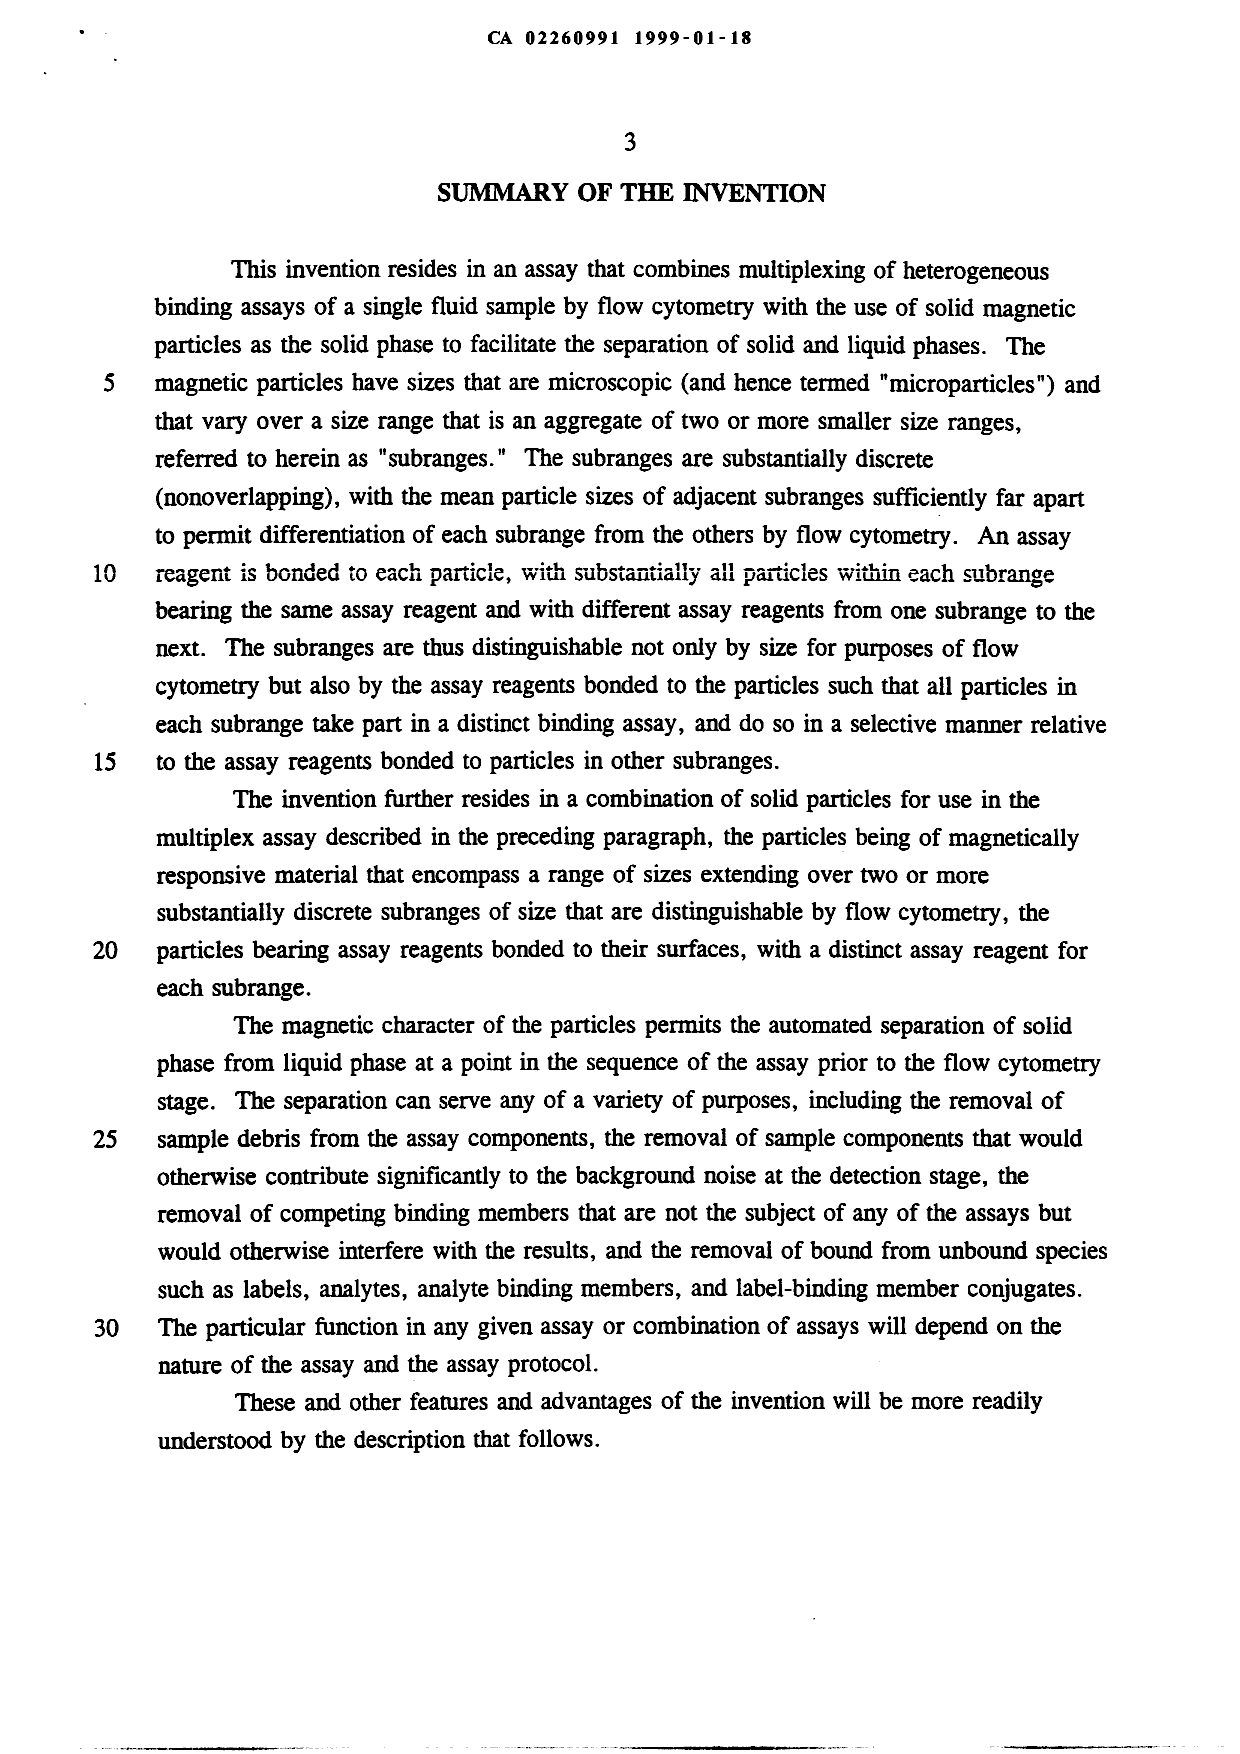 Canadian Patent Document 2260991. Description 19990118. Image 3 of 14